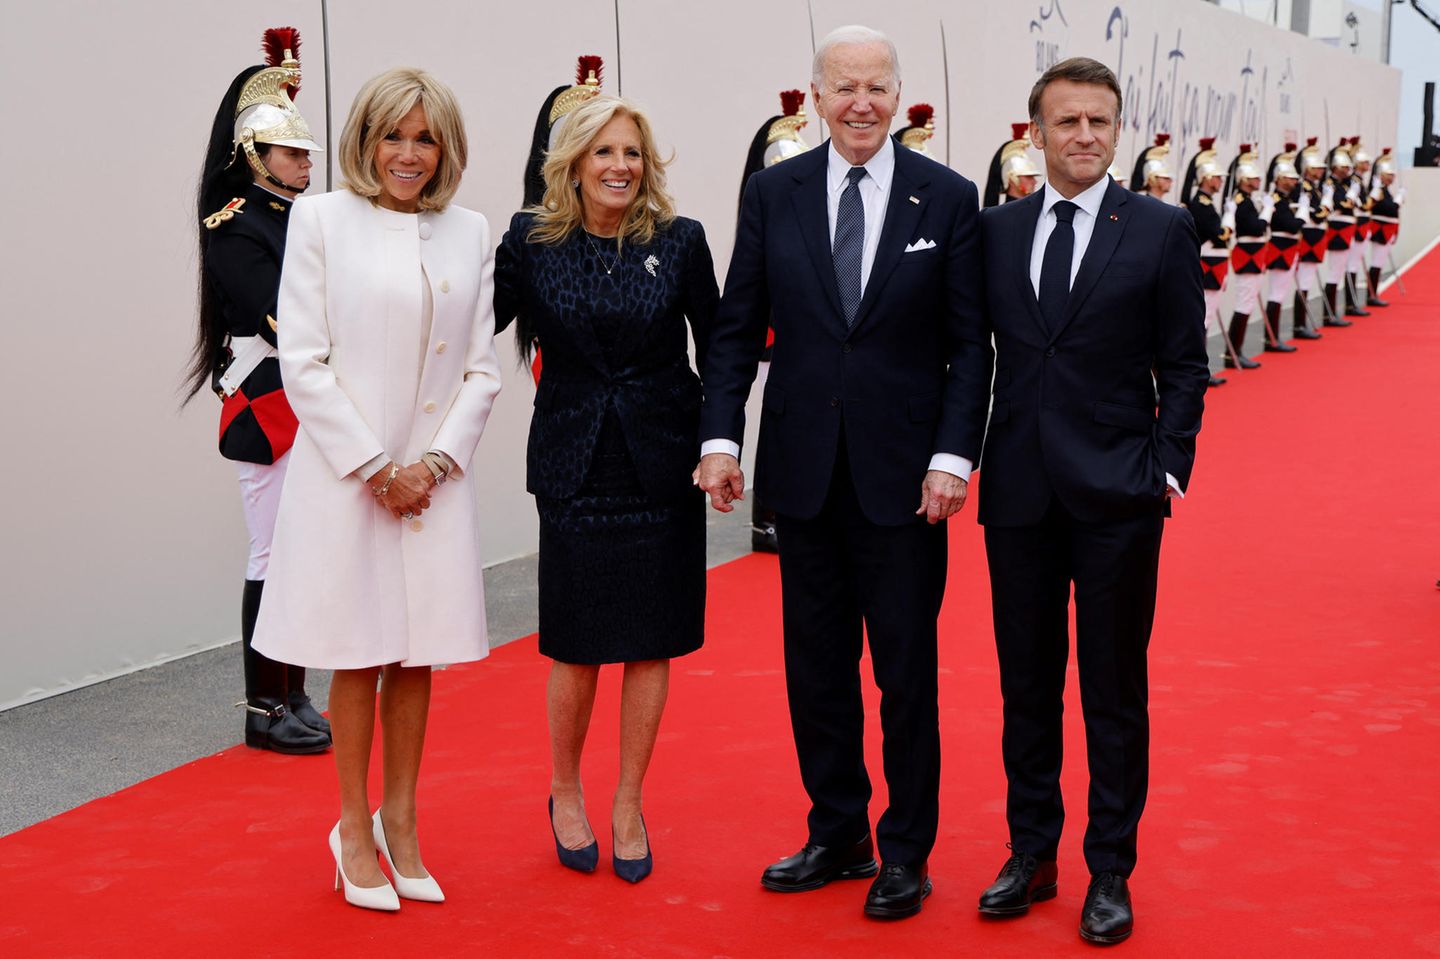 Joe und Jill Biden sind gerade auf Staatsbesuch in Frankreich und zeigen sich gemeinsam mit dem französischen Präsidenten Emmanuel Macron und dessen Ehefrau Brigitte. Modisch treten Brigitte und Jill harmonisch auf, wie so oft, wenn sie sich begegnen. Beide entscheiden sich für monochrome Ton-in-Ton-Looks mit passenden Pumps.